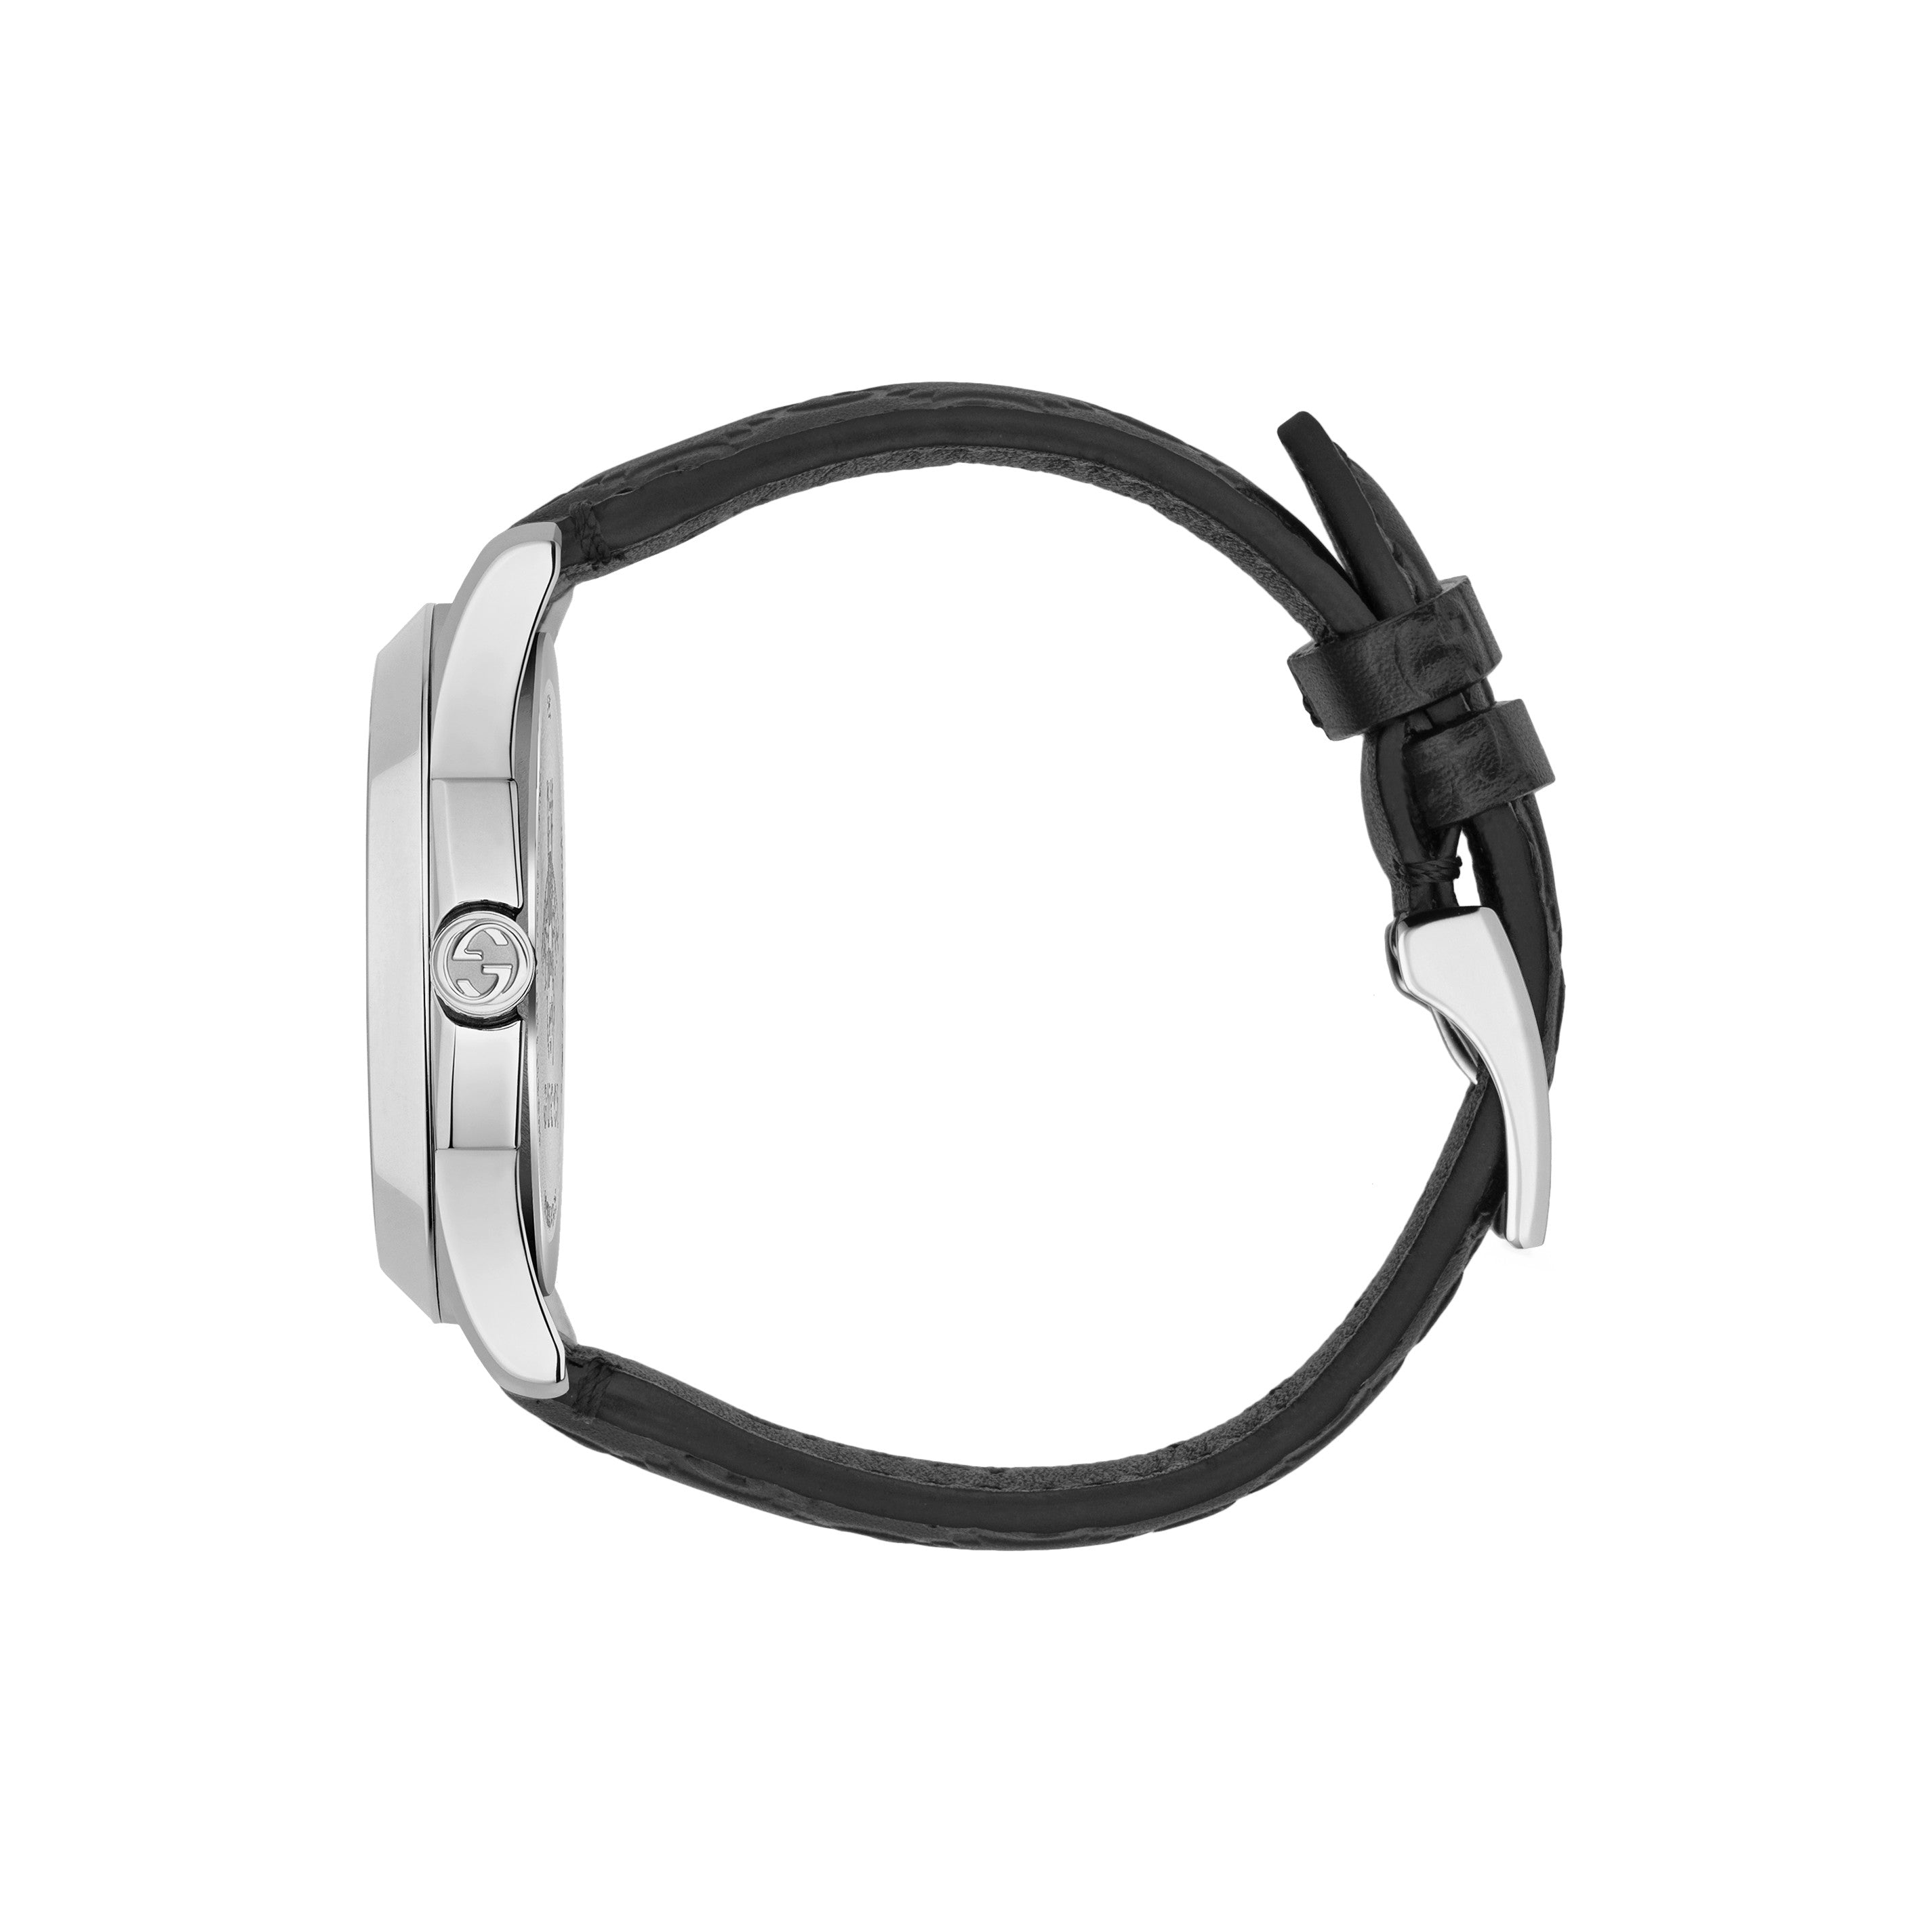 Unisex G-Timeless Watch YA1264031 Gucci